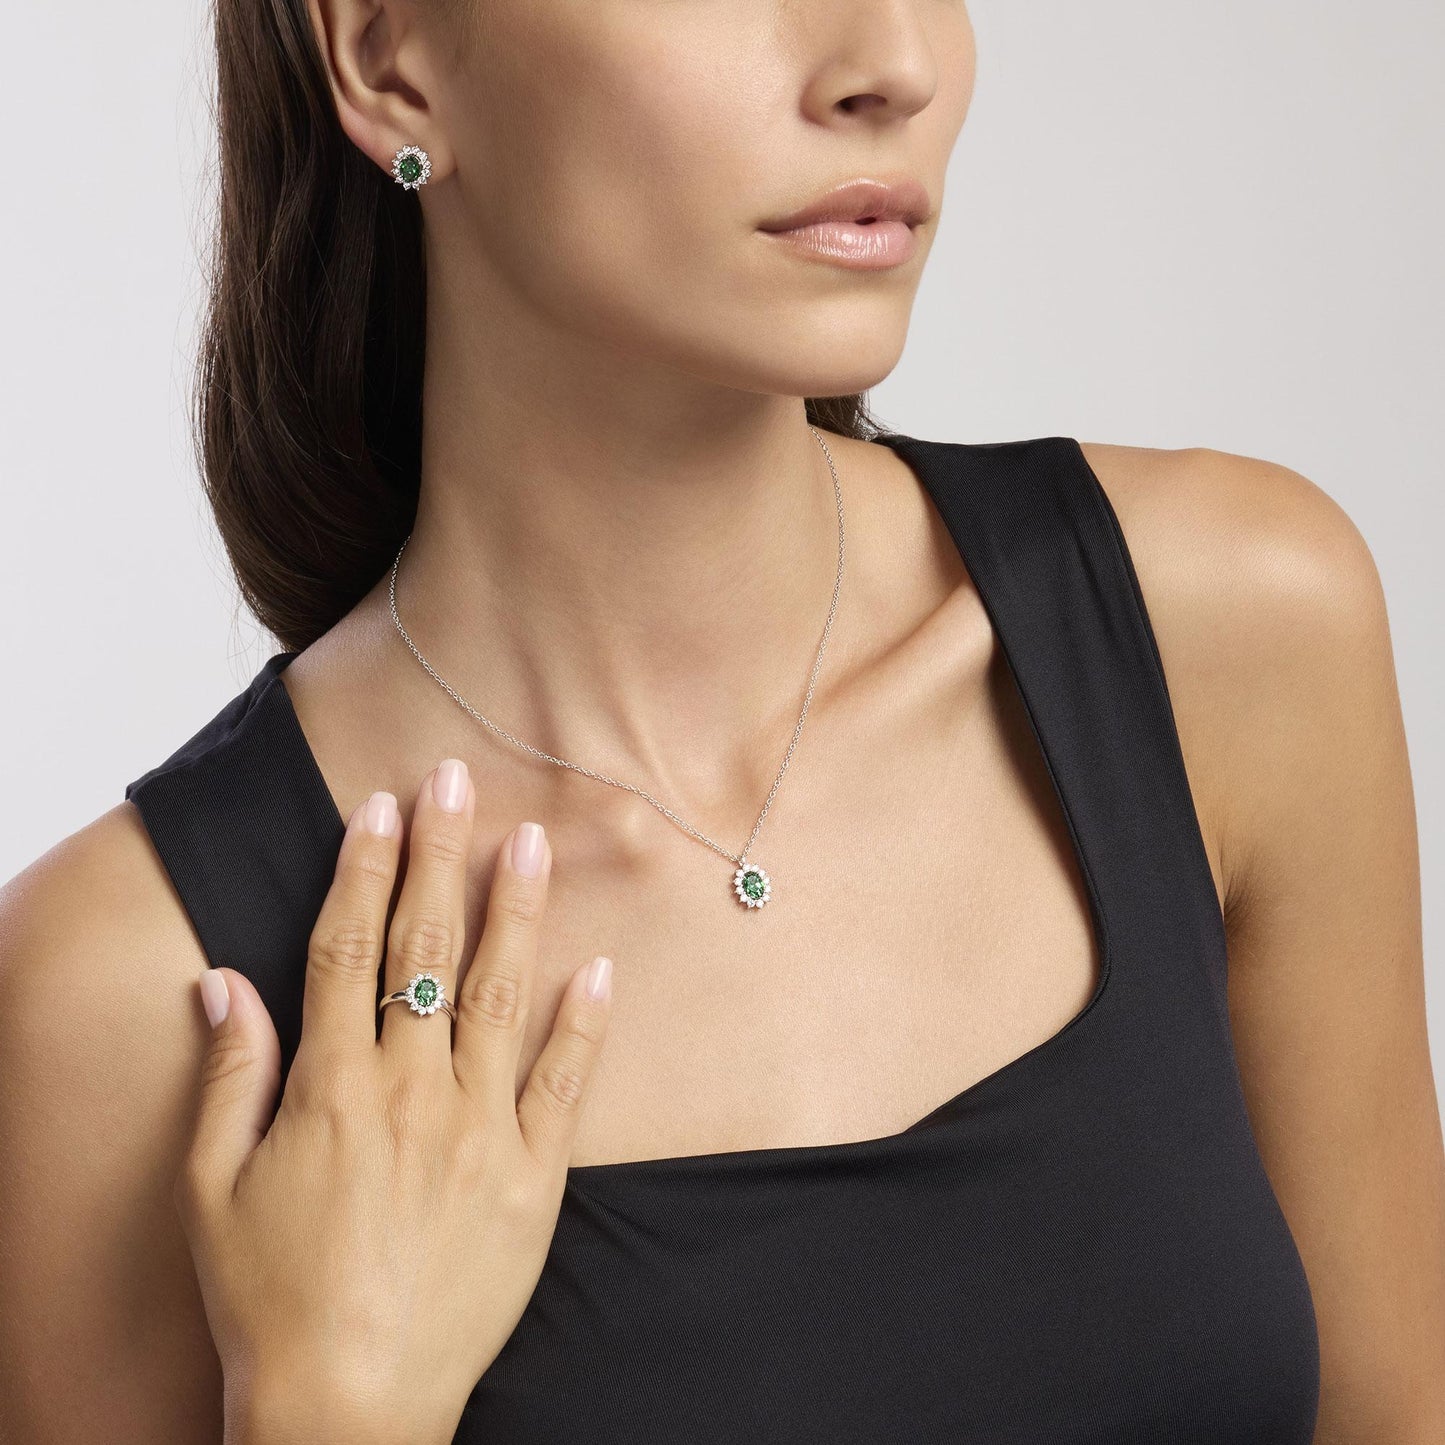 MABINA | Anello in argento con smeraldo sintetico ovale | COOL OR RÉTRO? | 523359